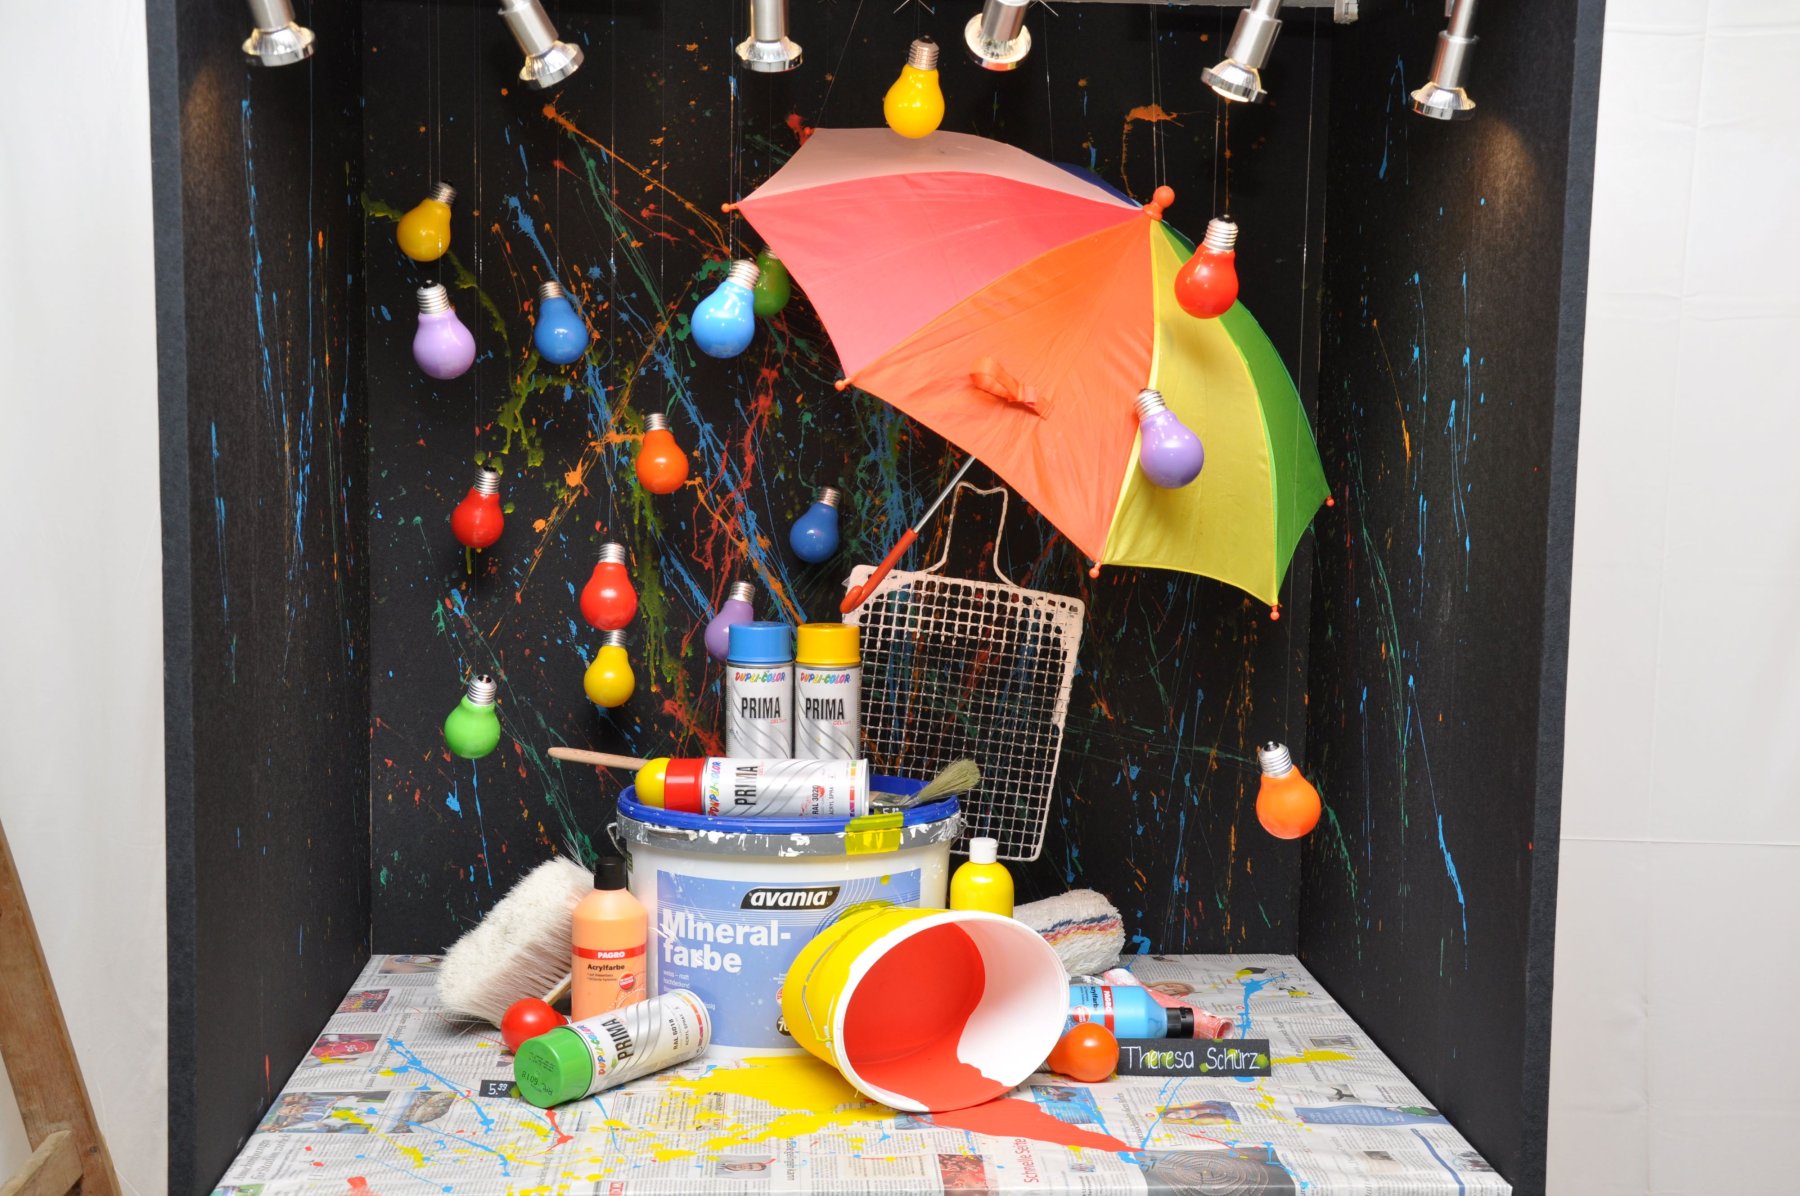 Schaufenster mit buntem Regenschirm, bunten Farbdosen, Malerzubehör und Glühbirnen